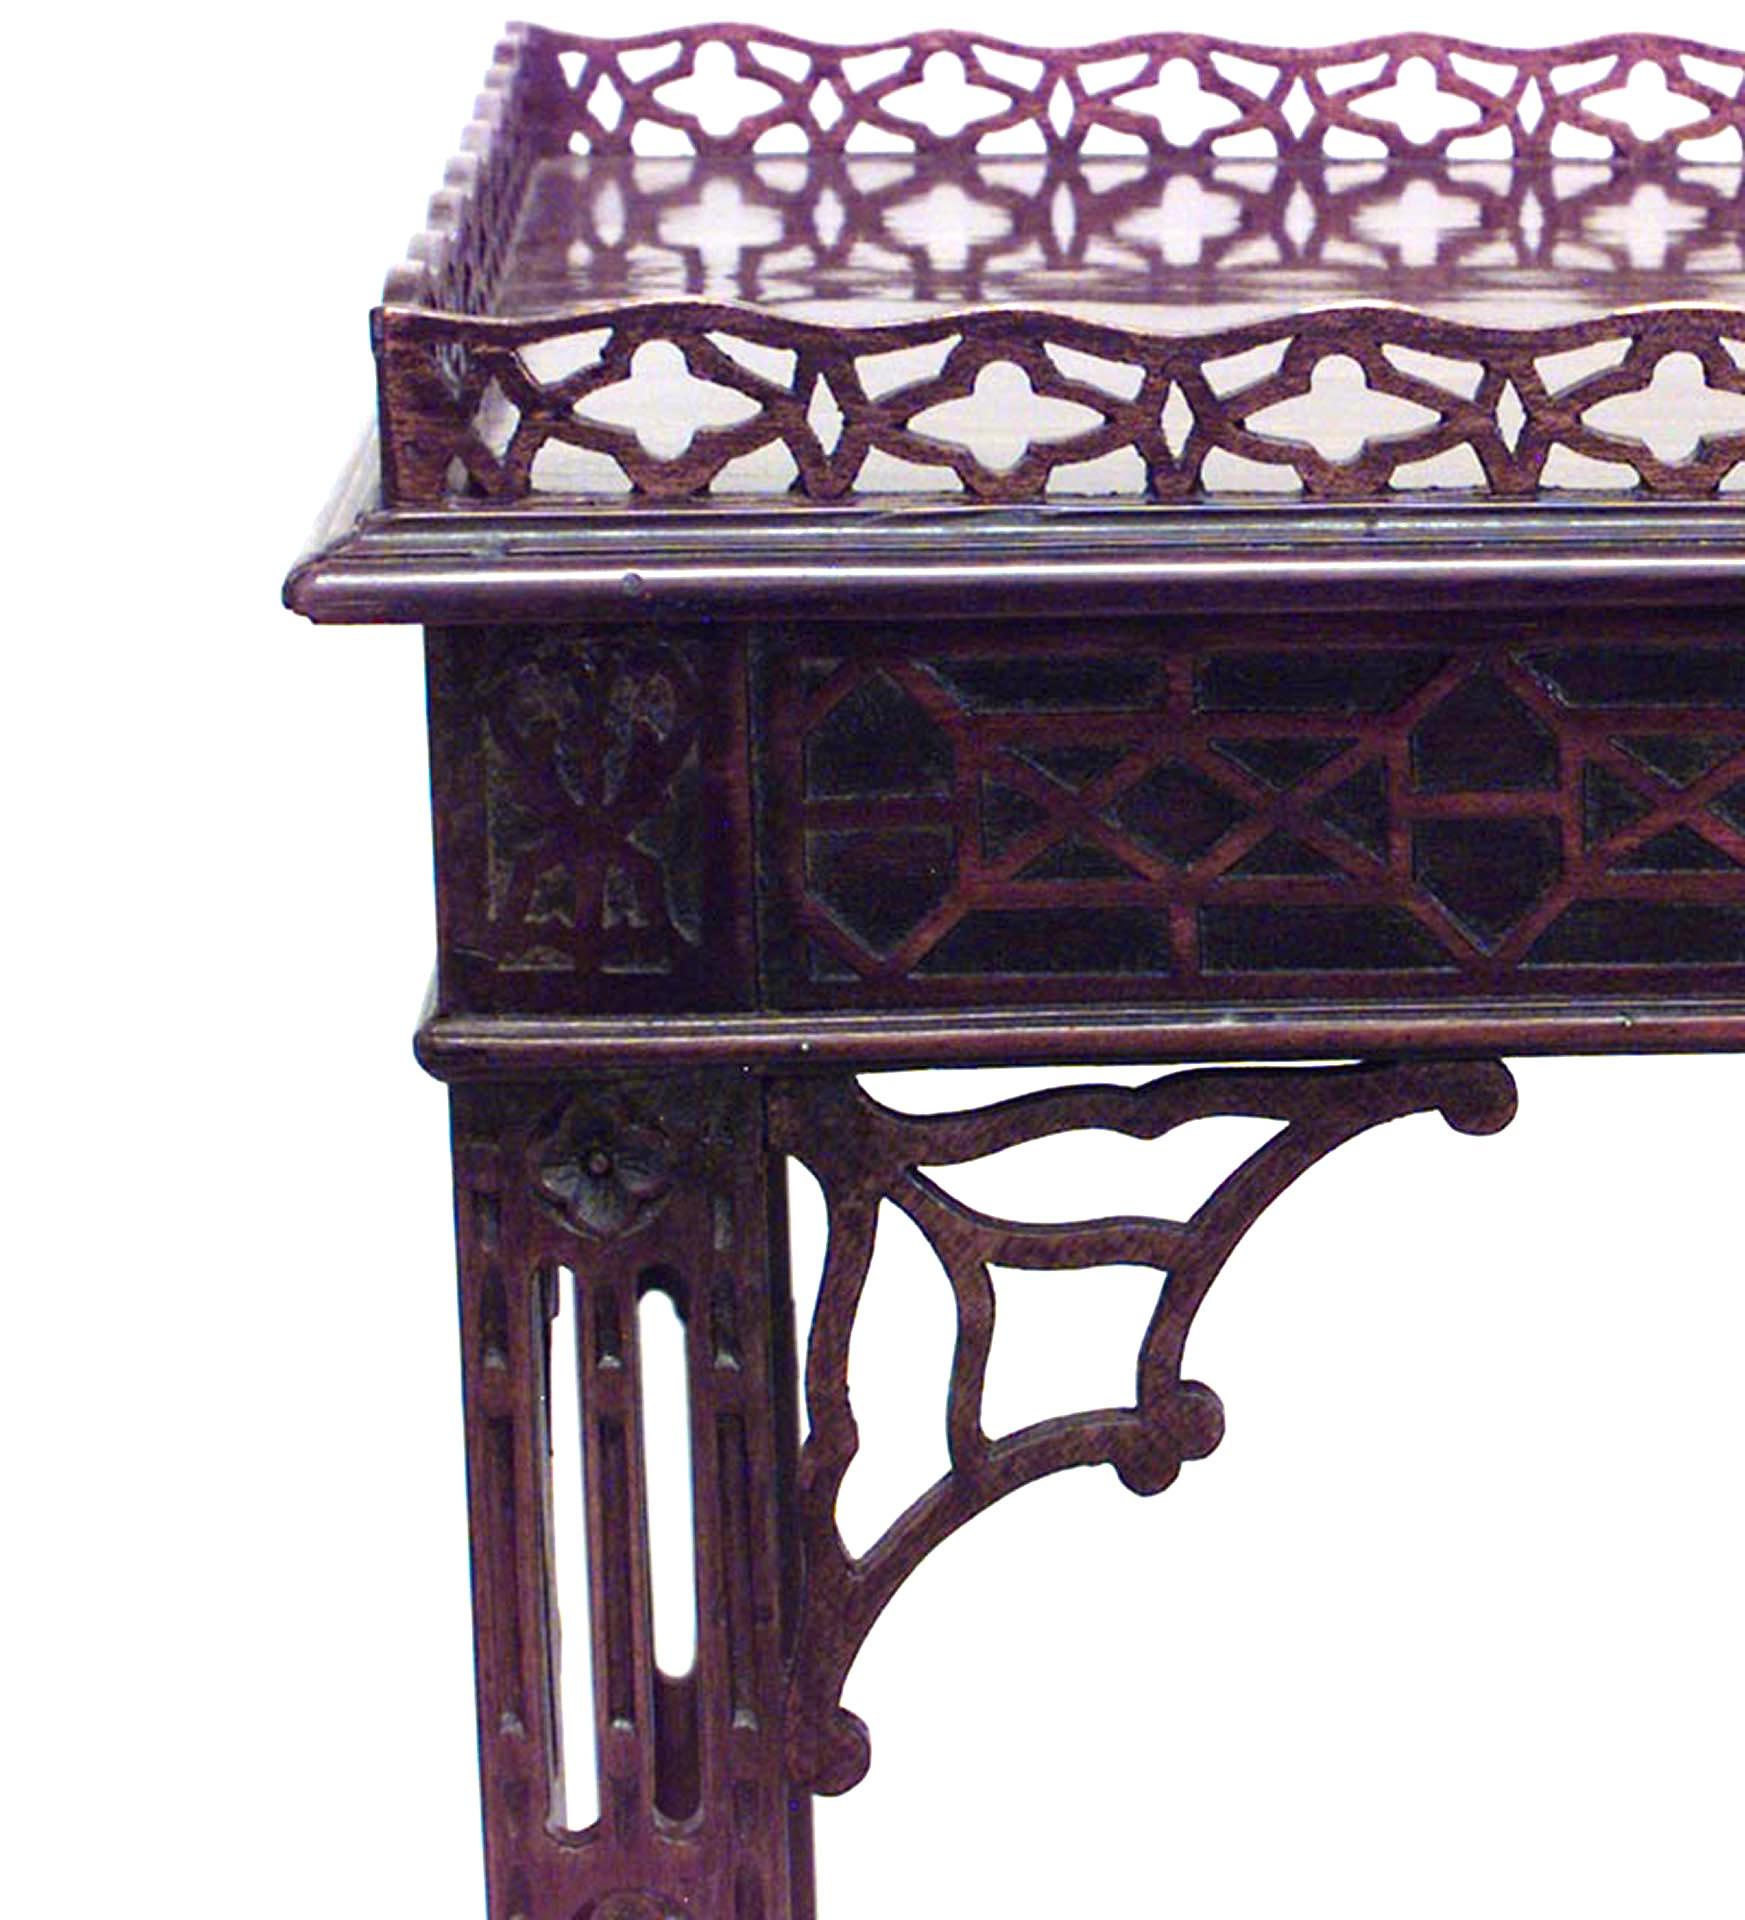 Englischer Mahagoni-Silbertisch im chinesischen Chippendale-Stil (spätes 19. Jahrhundert) mit durchbrochenen und blinden Laubsägearbeiten und einer X-Bahre, die eine untere Etage mit Lederrollen trägt.
